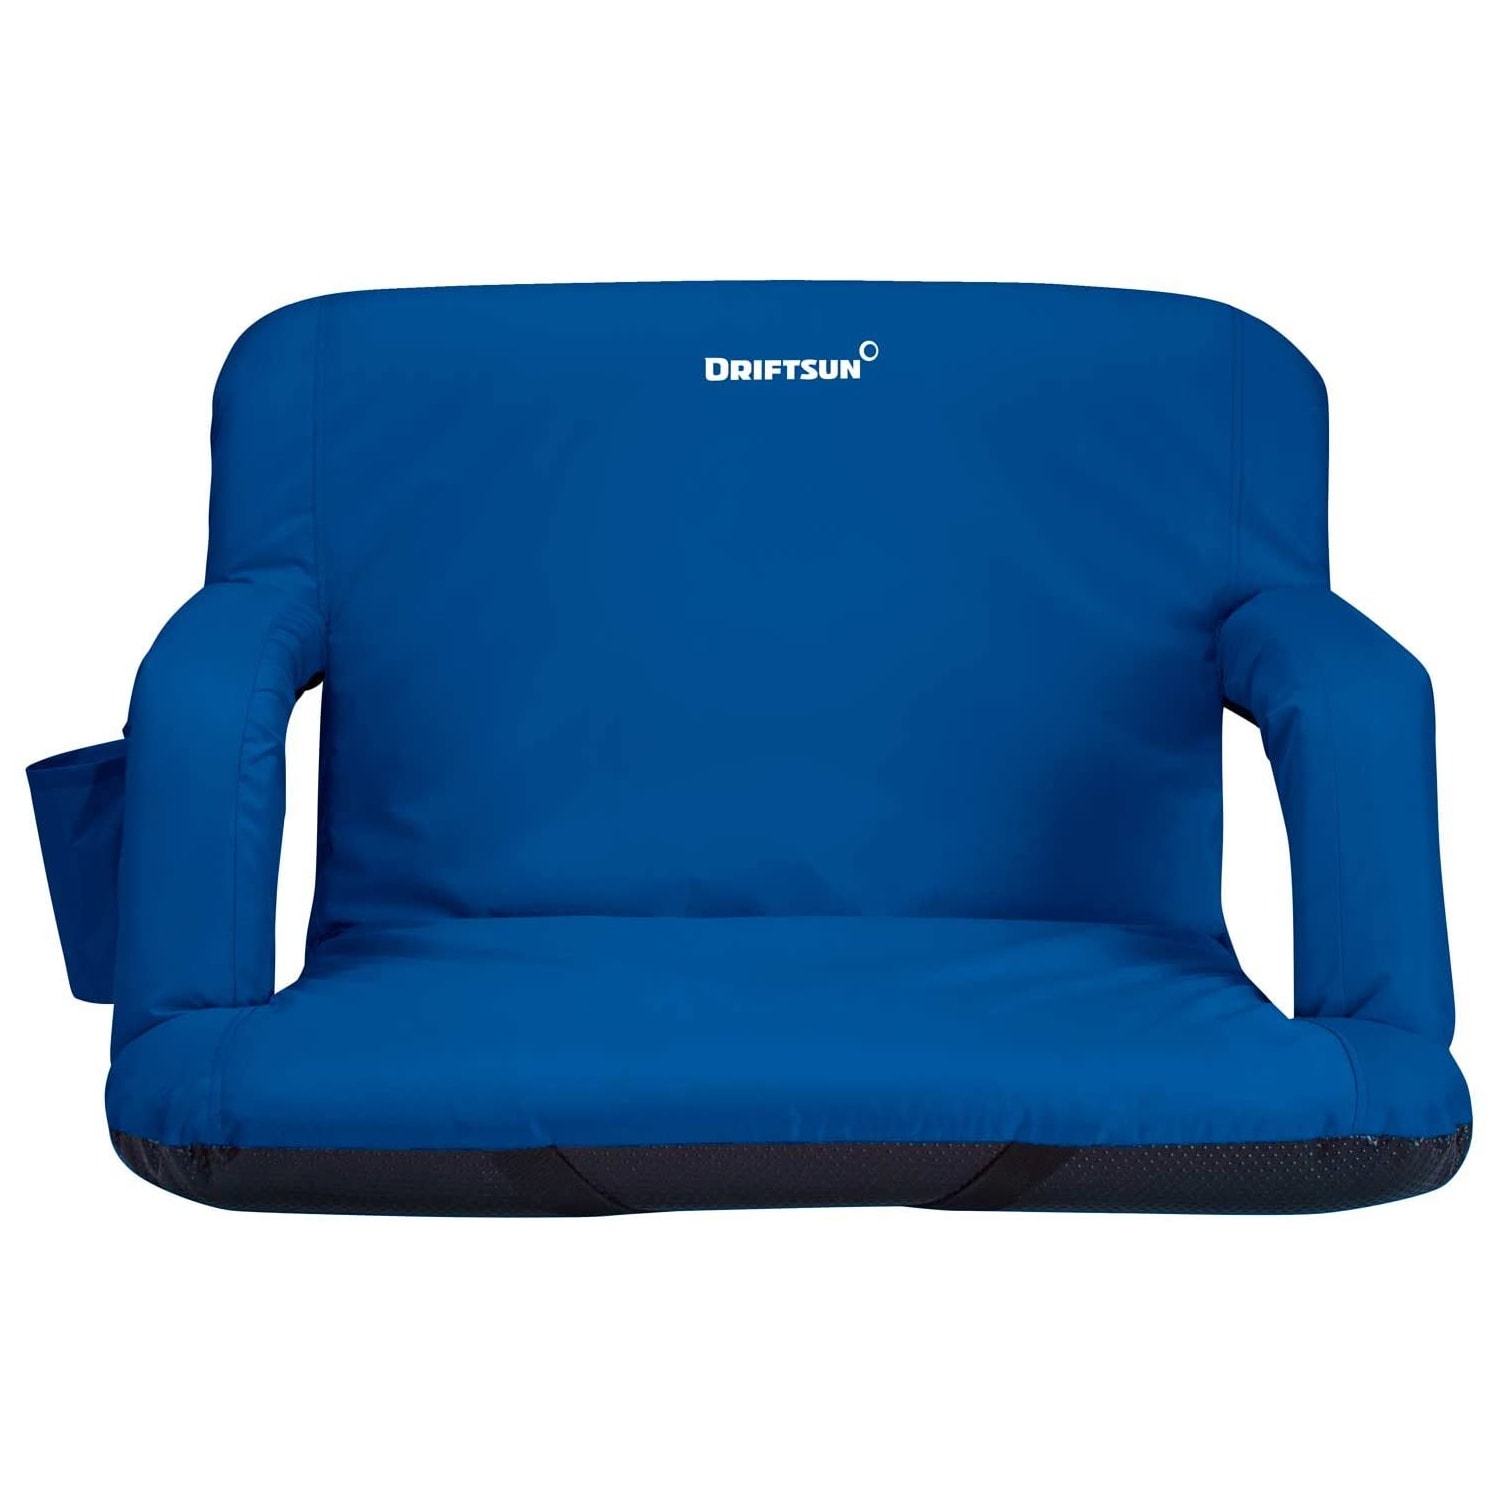 BirdRock Home Bleacher Cushions & Seats at